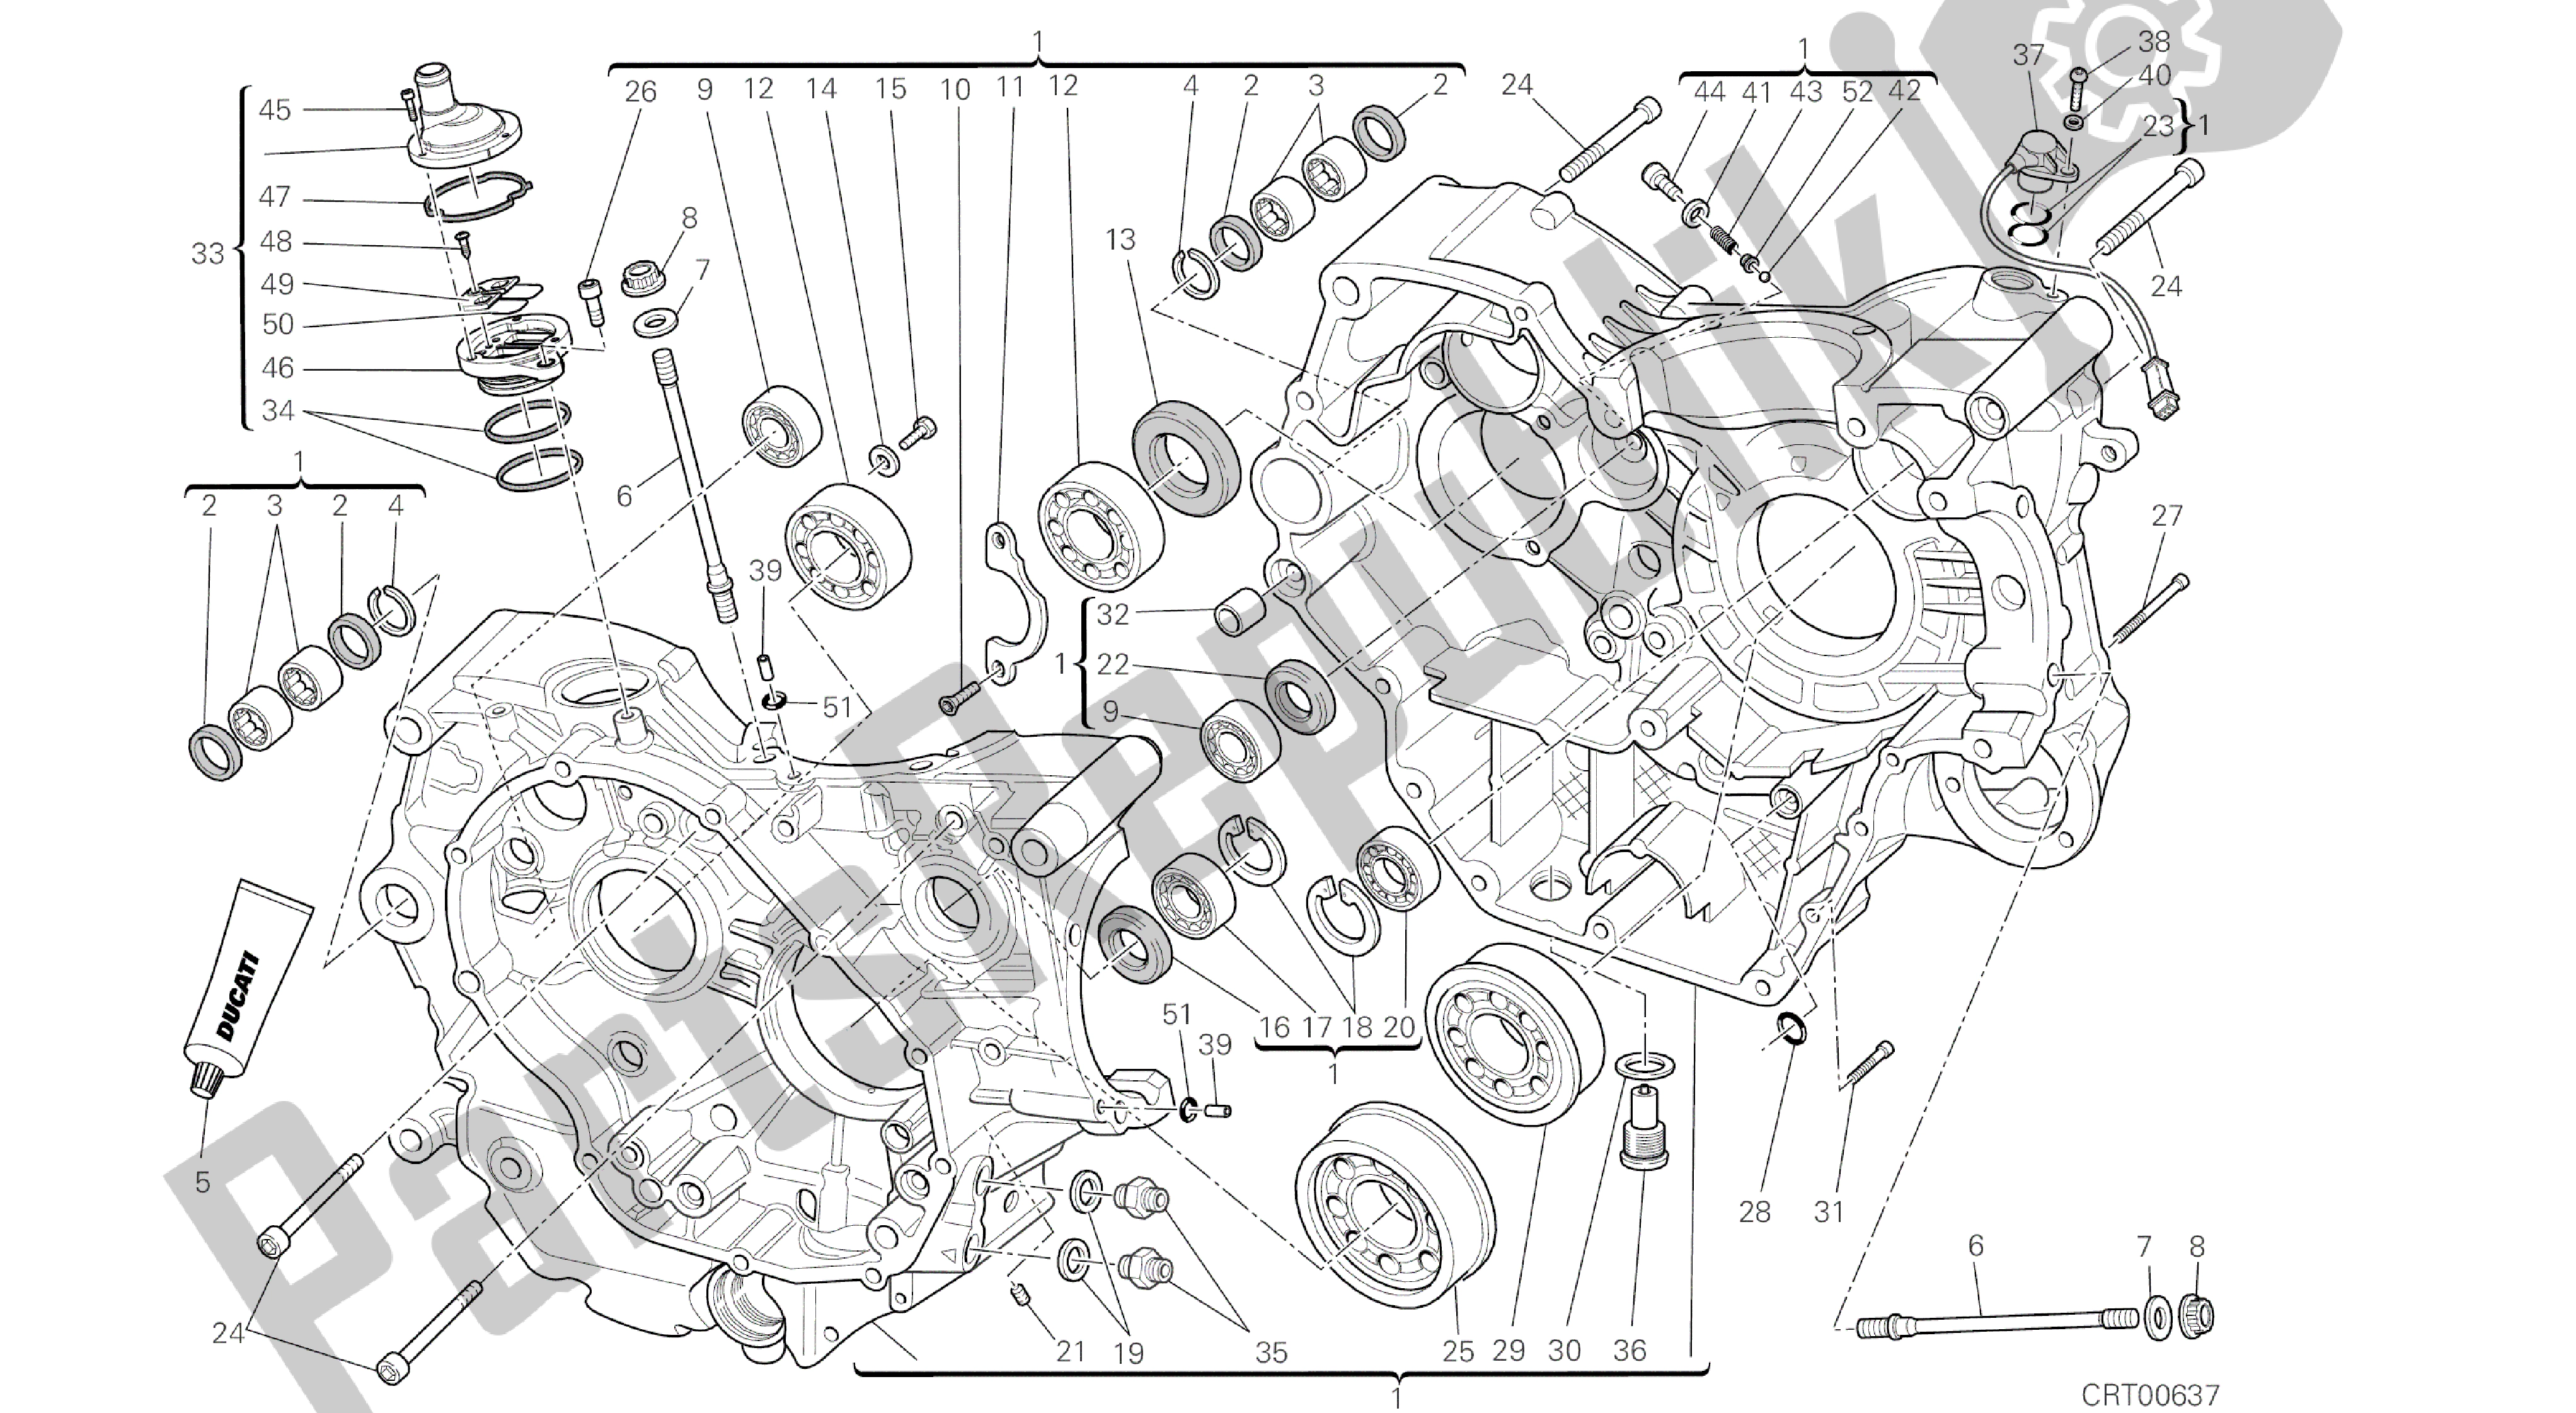 Tutte le parti per il Disegno 010 - Basamento Motore [mod: M796 Abs; Xst: Aus, Bra, Eur, Jap, Twn] Gruppo Motore del Ducati Monster ABS 796 2014